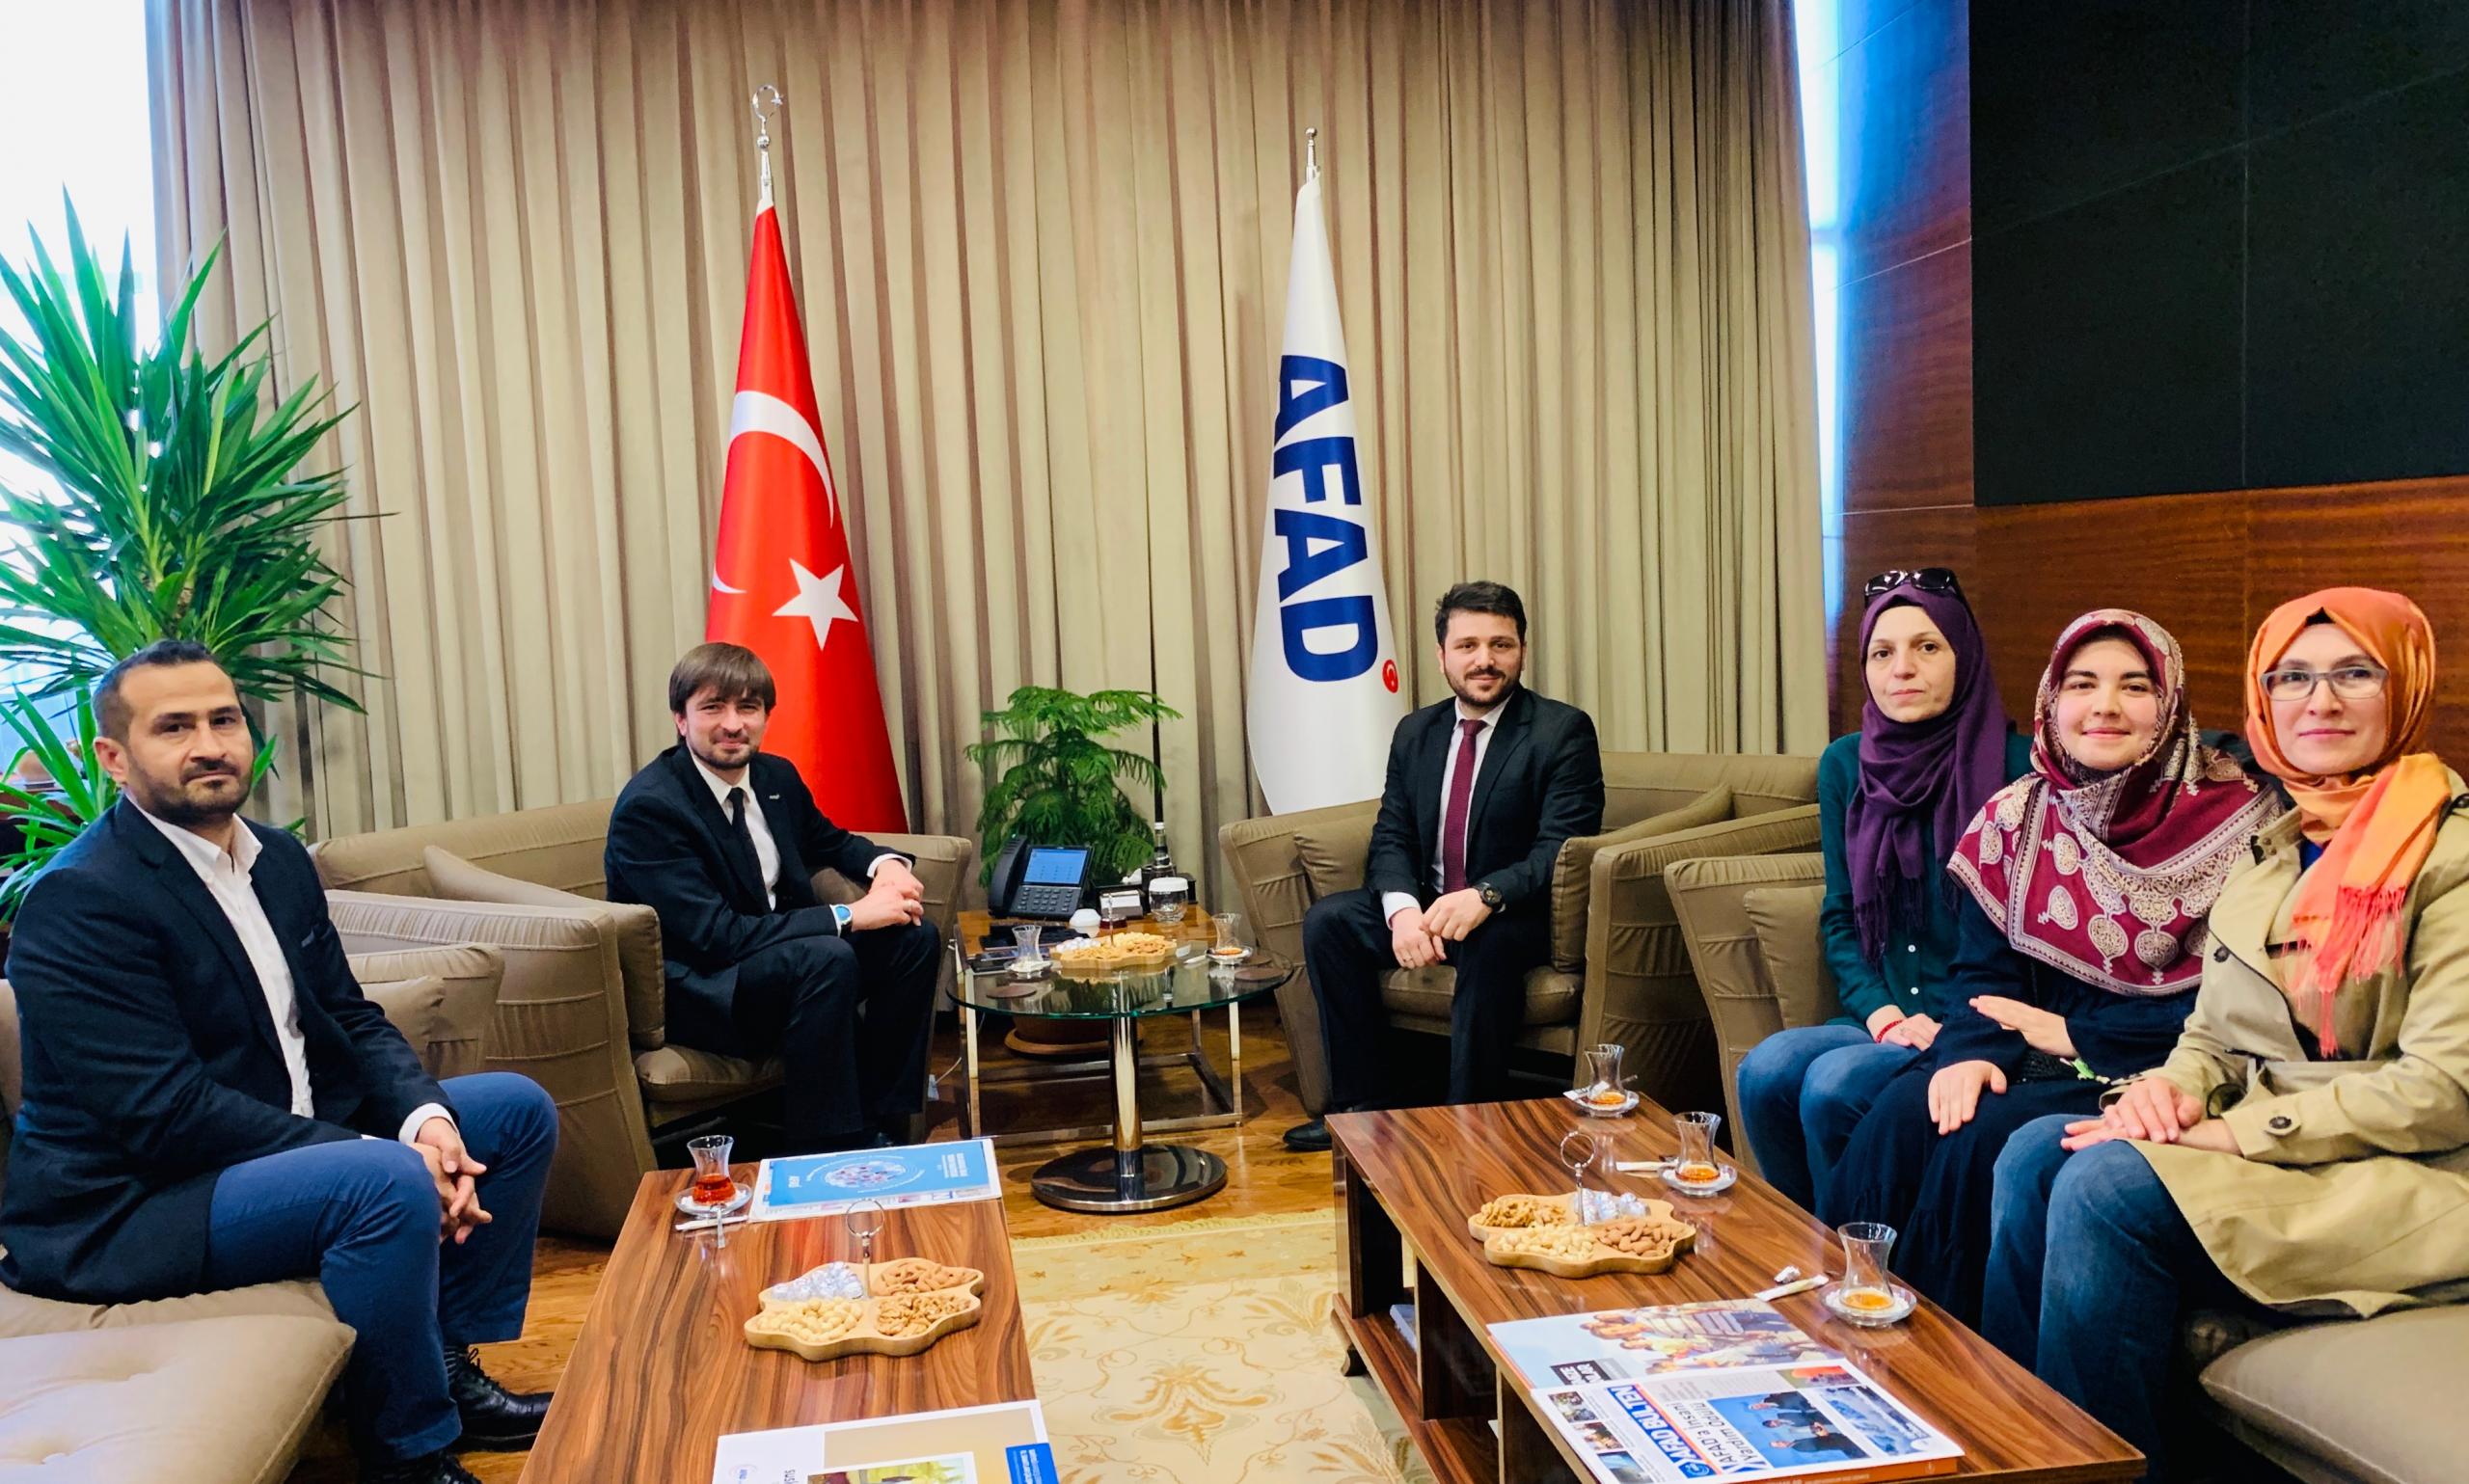 AFAD Başkanı Güllüoğlu: “Harekete Geç, Dünyayı Keşfet”